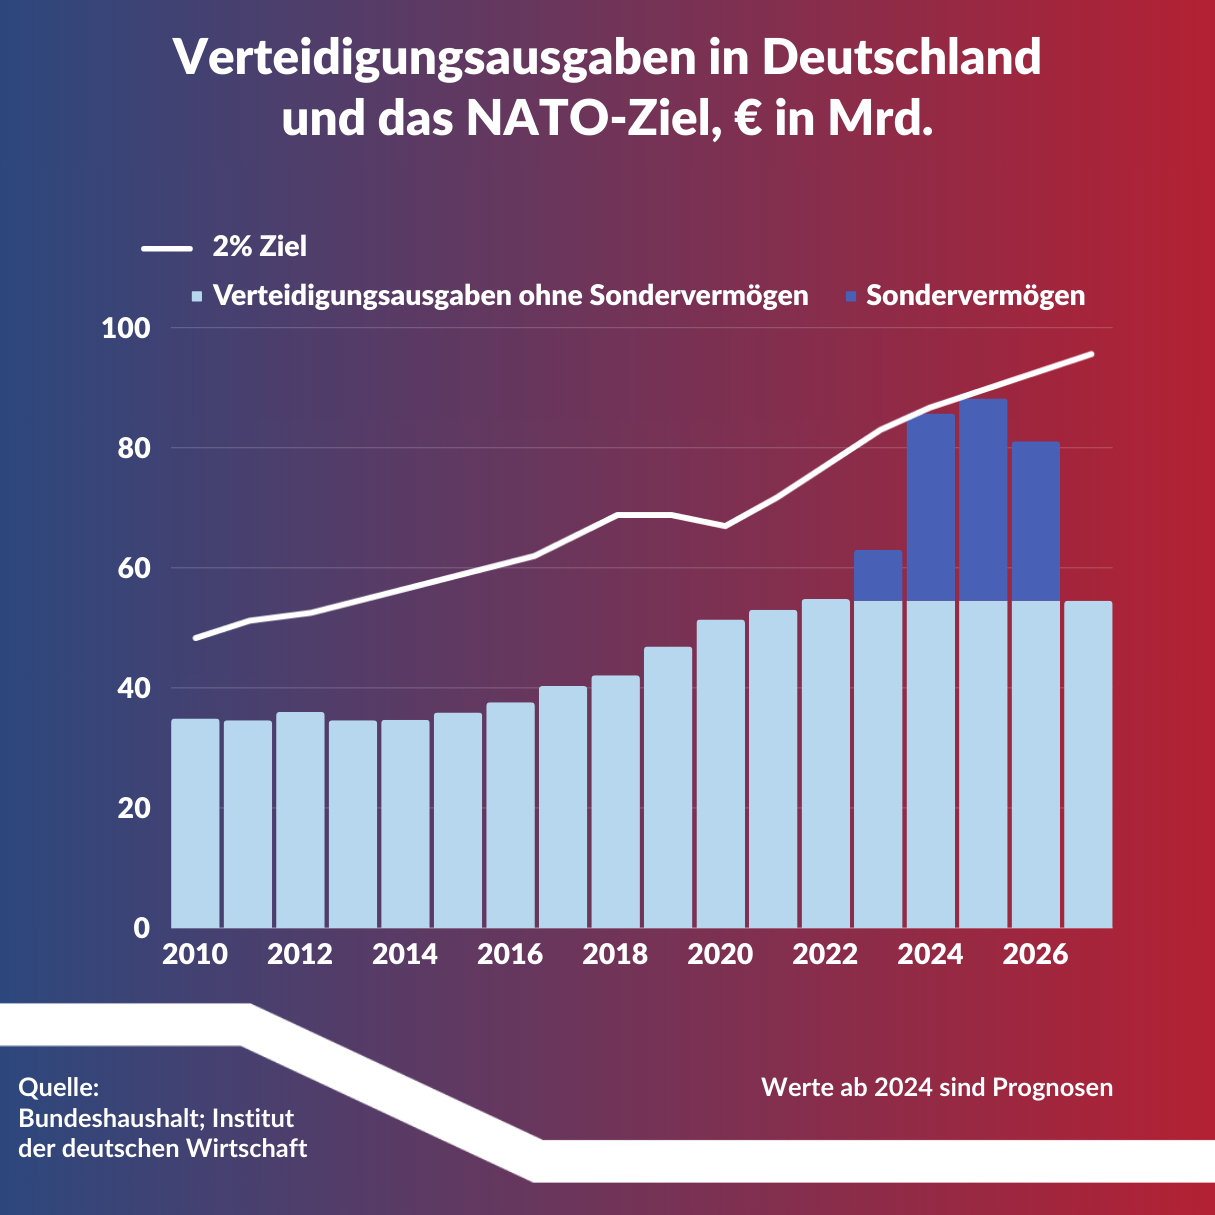 Infografik zur Entwicklung der Verteidigungsausgaben in Deutschland von 2010 bis 2026.